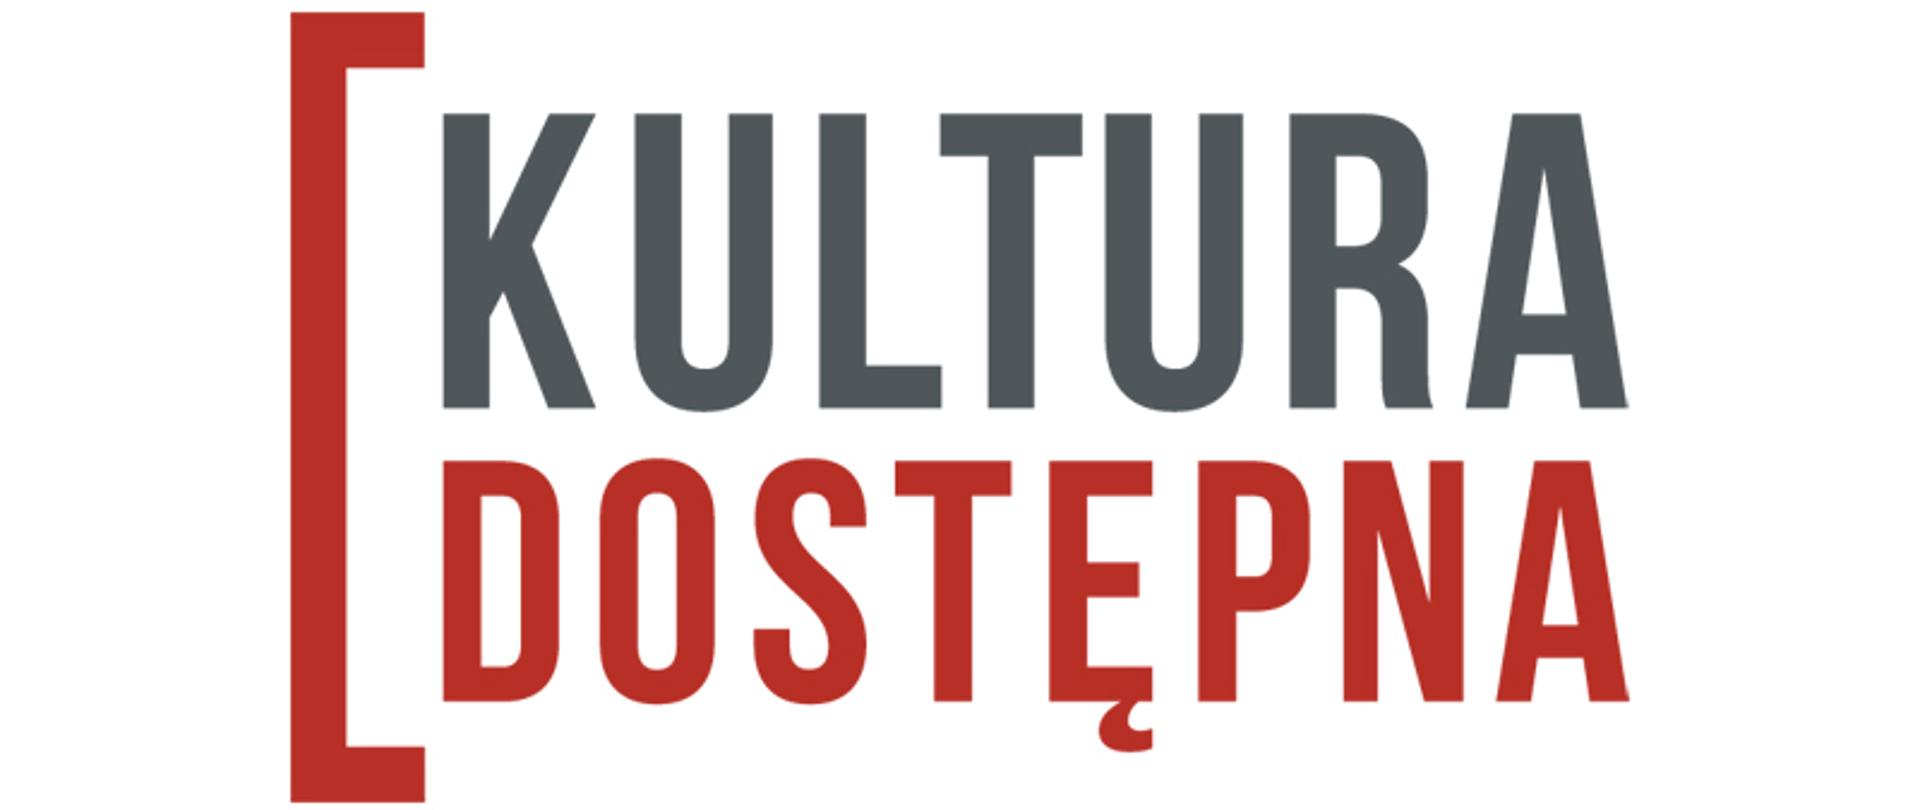 Kultura dostępna. Logotyp